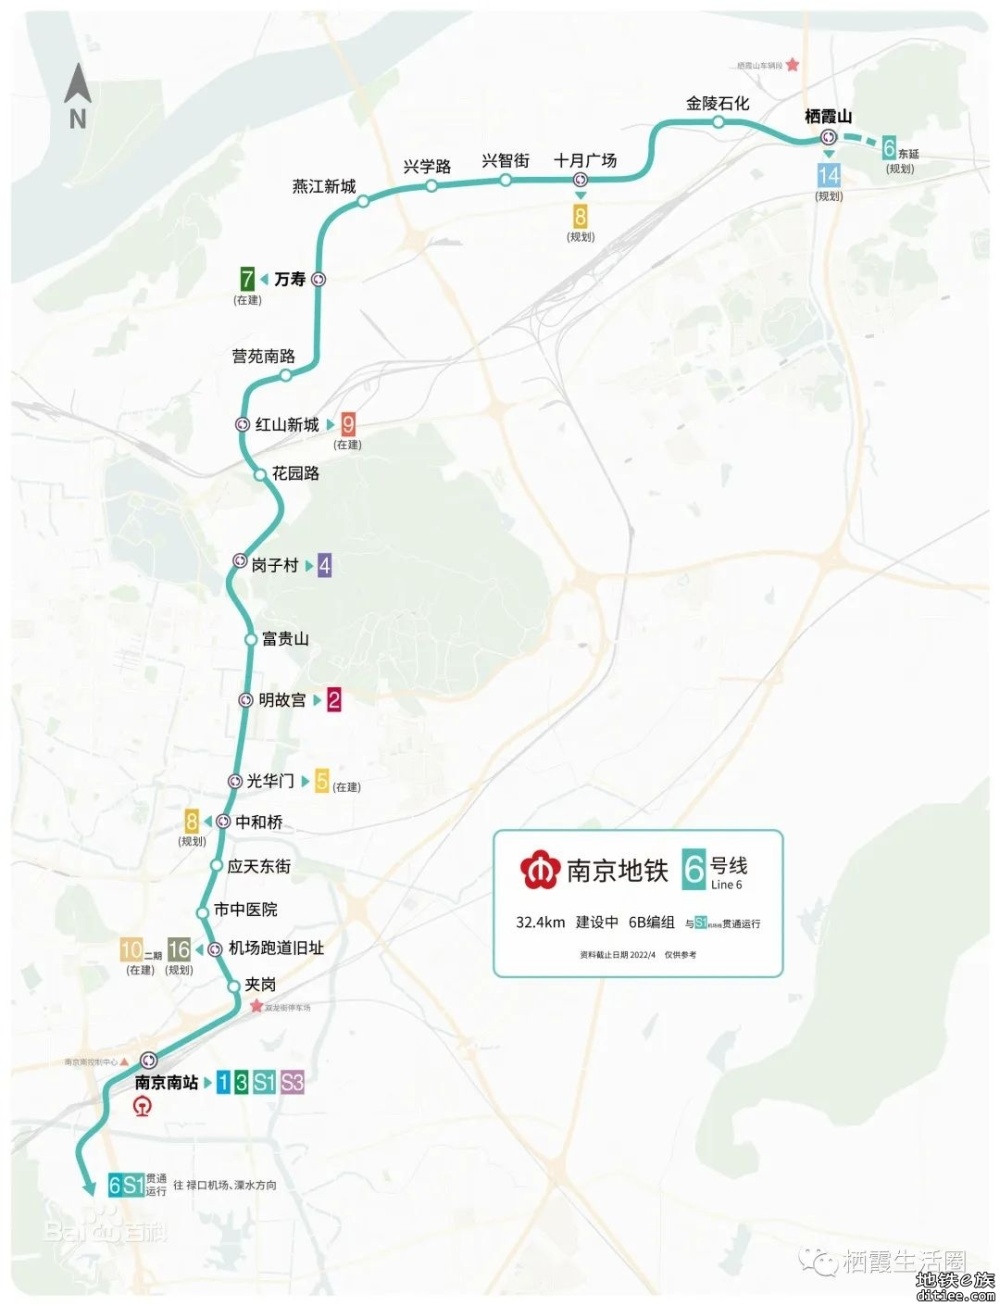 南京地铁6号线新生圩站、刘家库站有进展